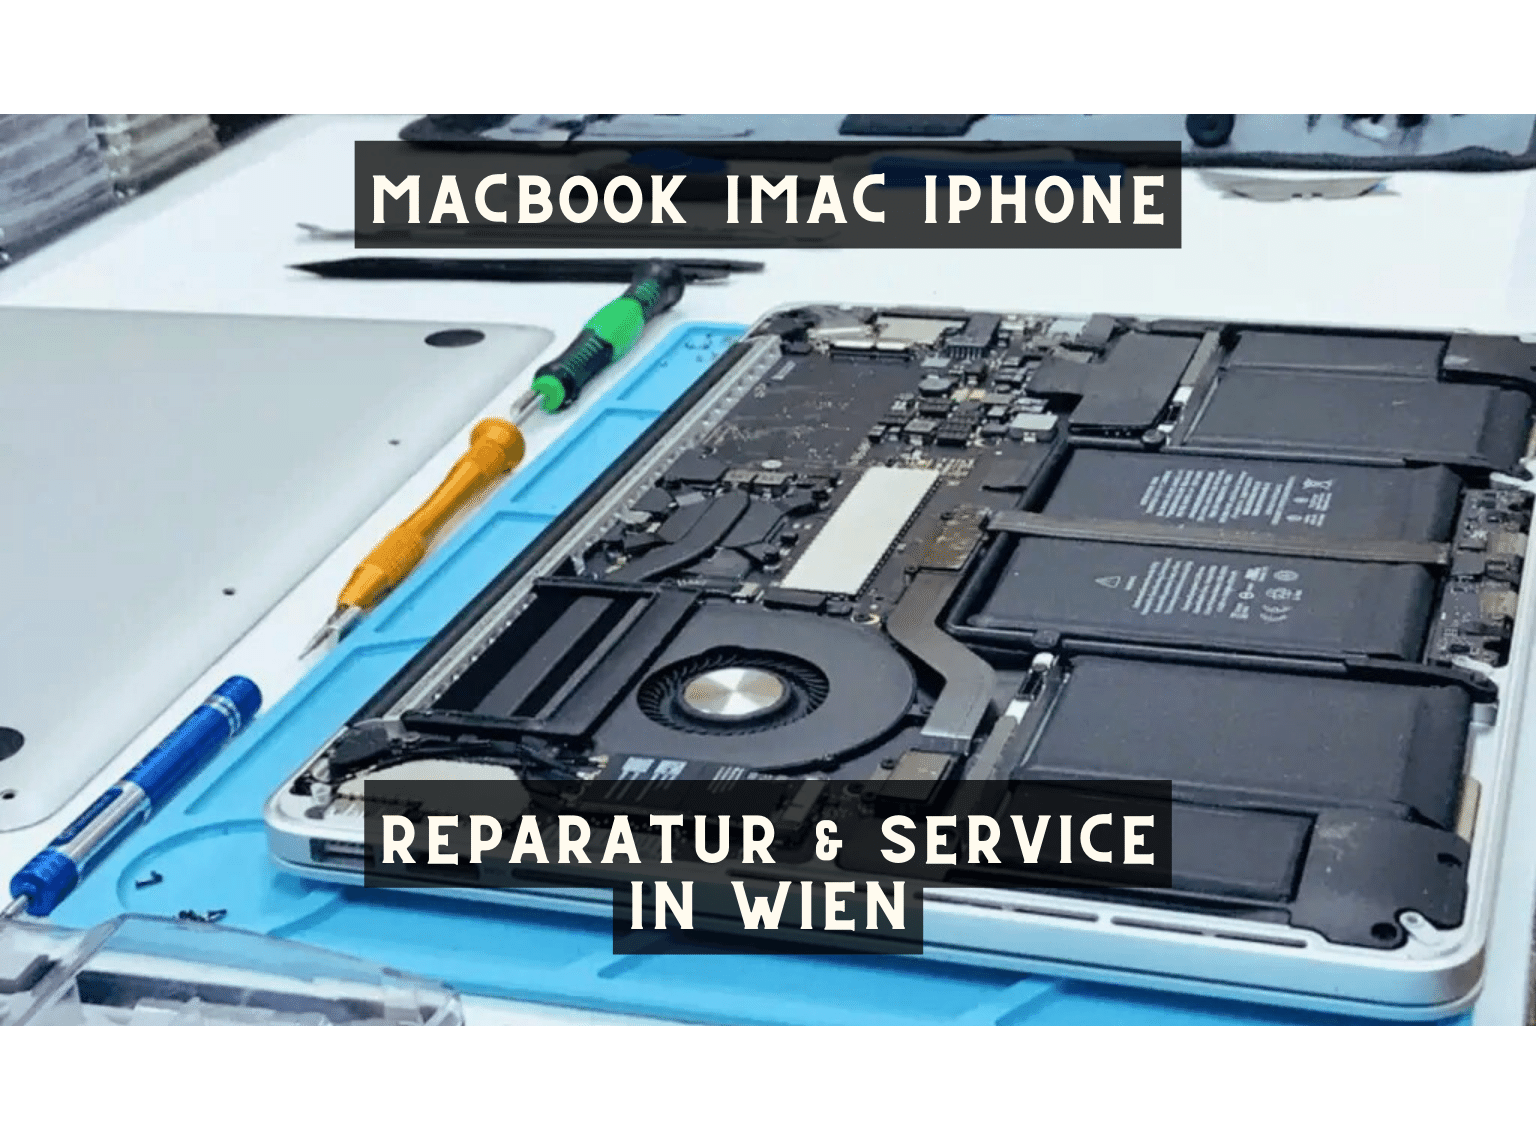 MacBook iMac iPhone Reparatur & Service in Wien